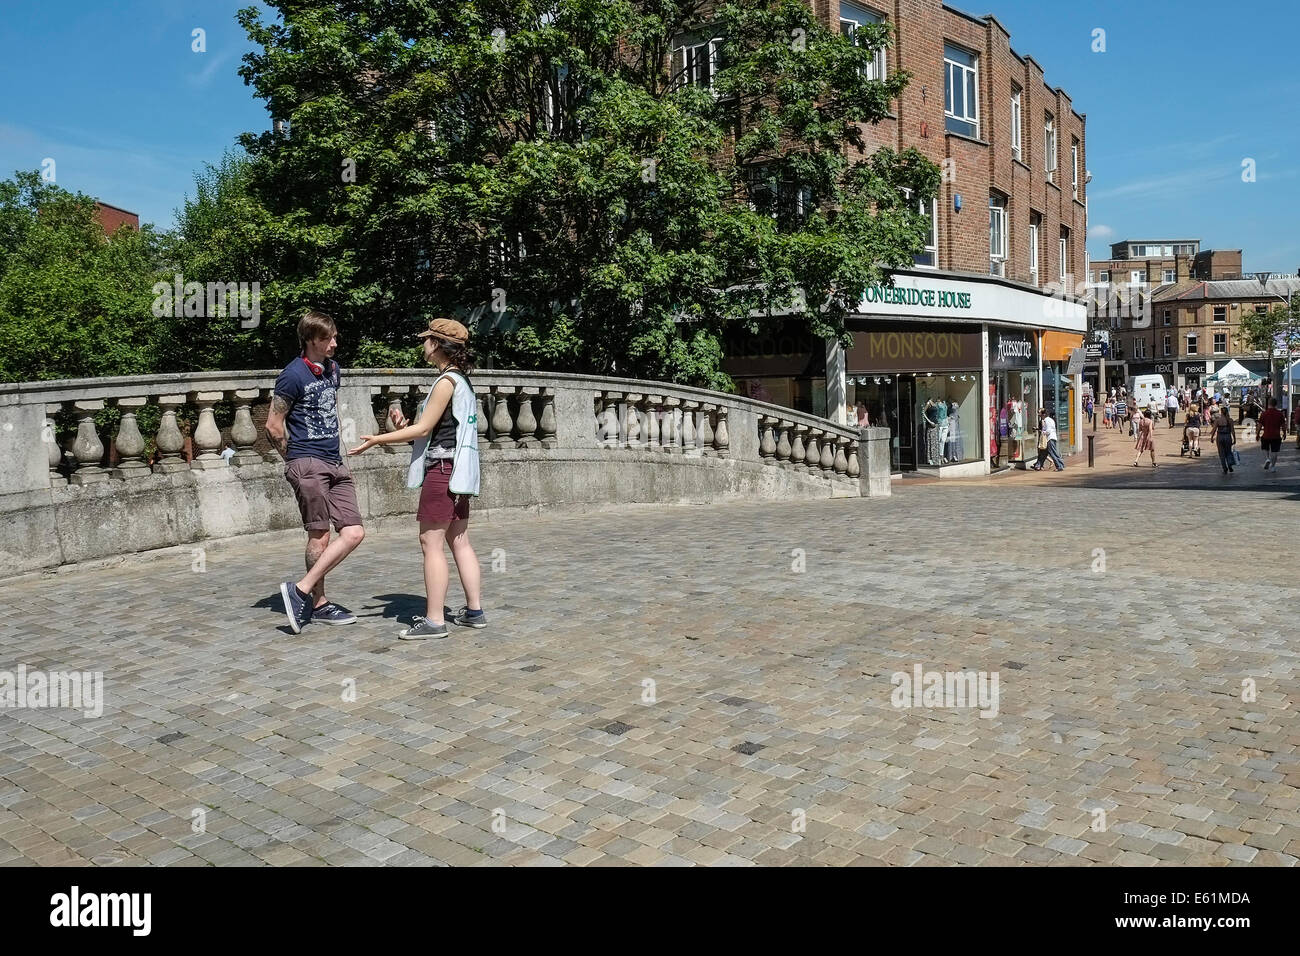 Deux personnes en conversation sur le pont de pierre dans le centre-ville de Chelmsford. Banque D'Images